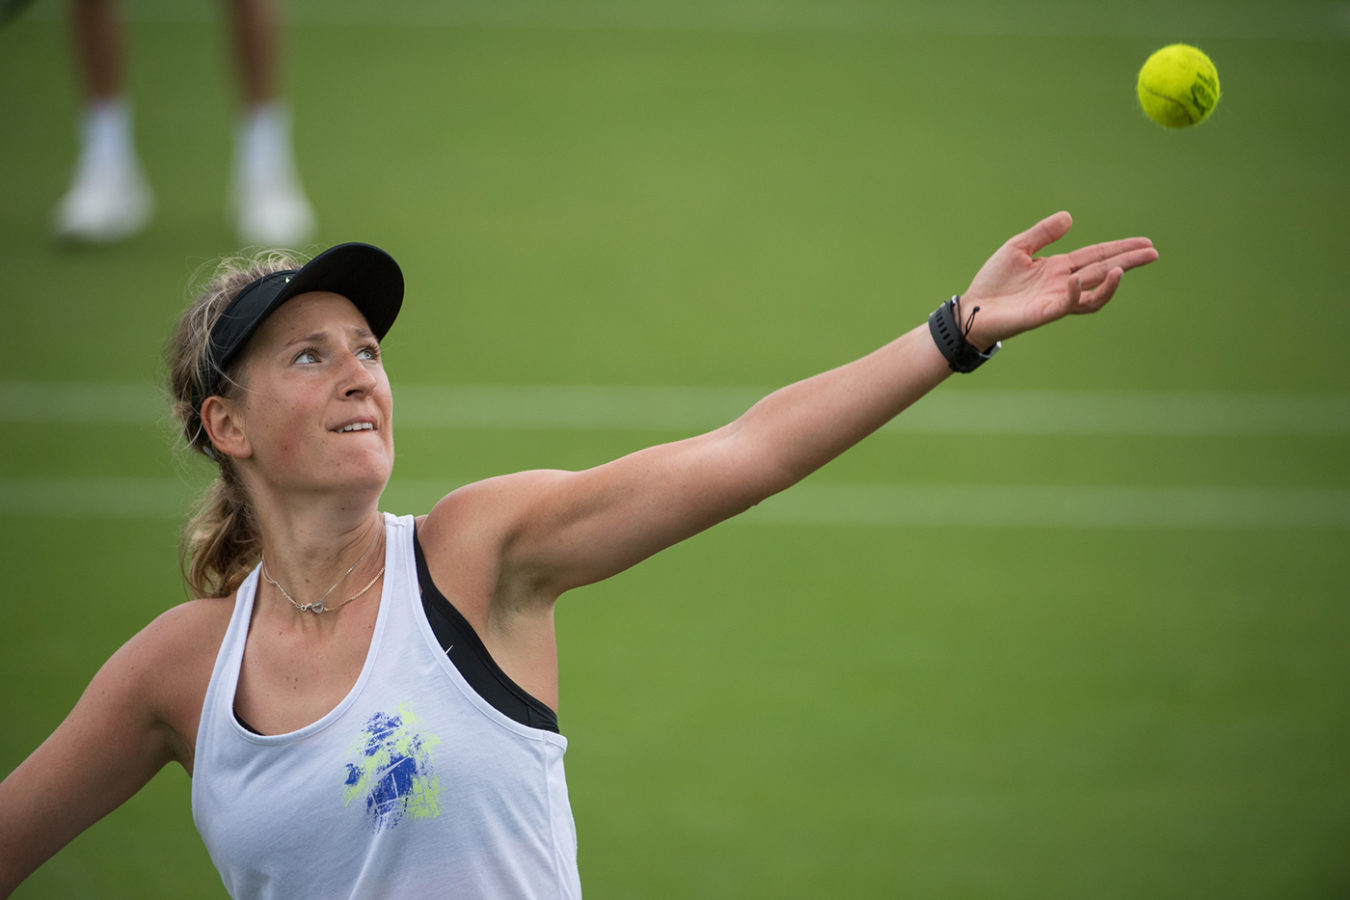 L'ultimo Slam giocato da Victoria Azarenka è stato il Roland Garros 2016.